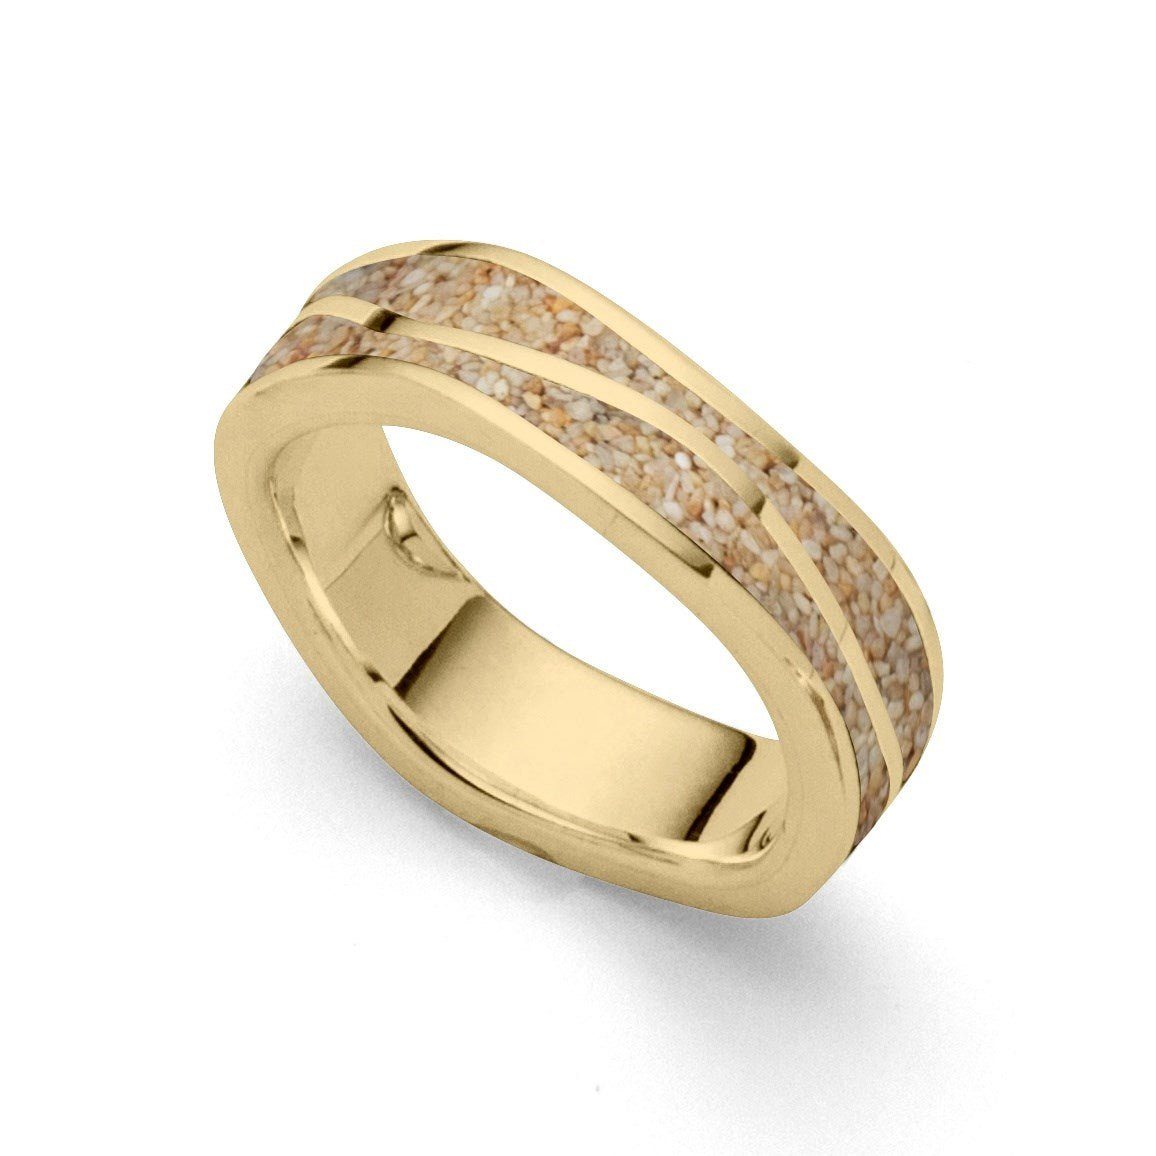 DUR Fingerring DUR Schmuck: Ring "Wellen" mit Strandsand, vergoldet R5294